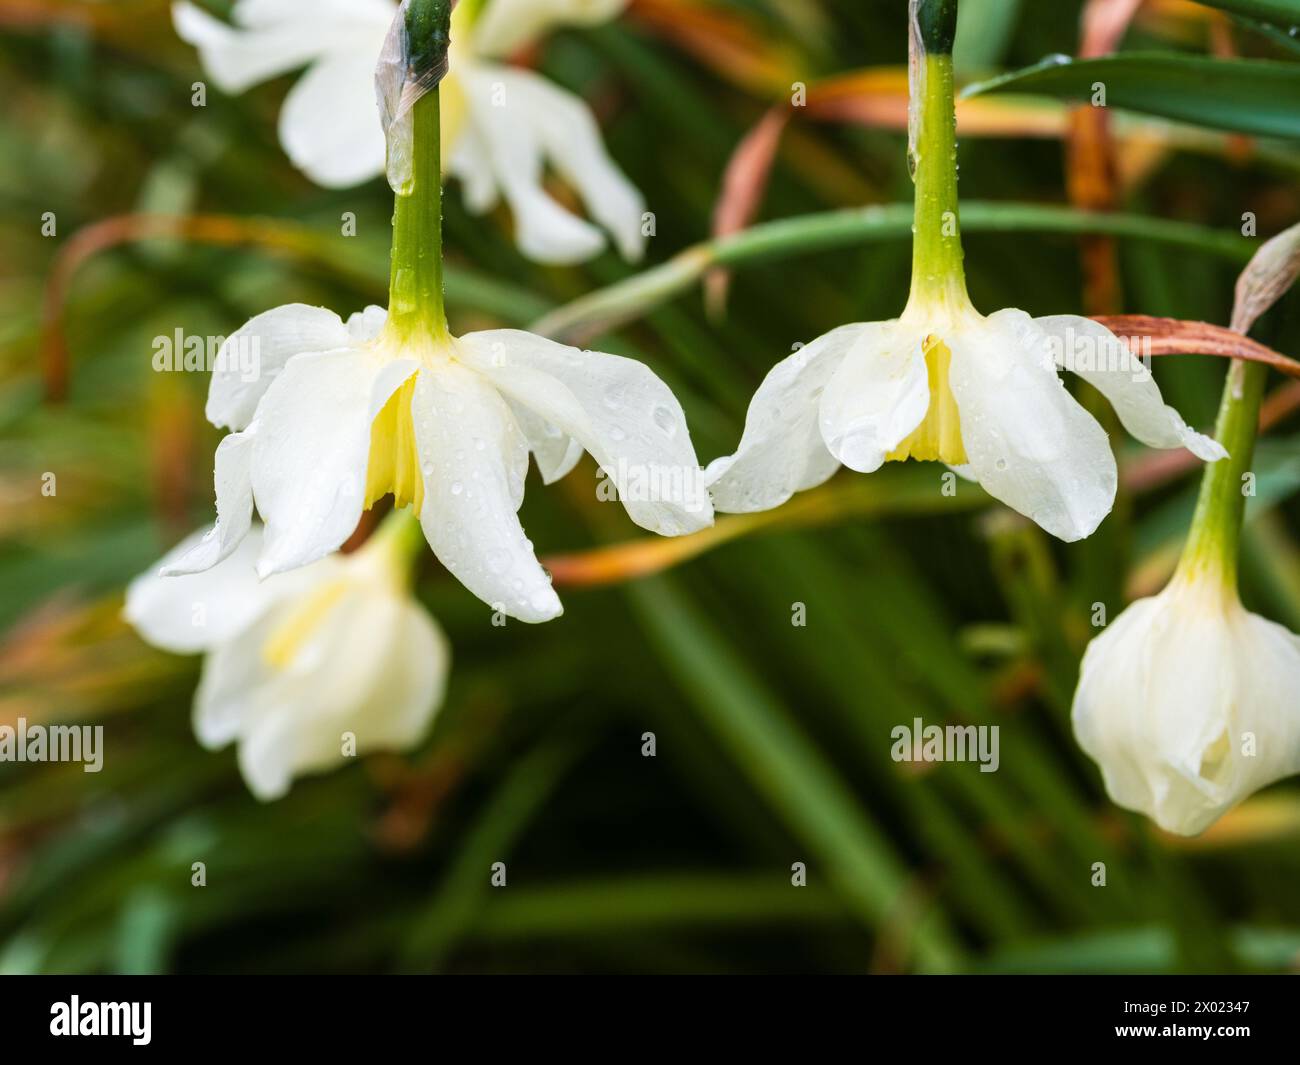 Petali bianchi e corolla giallo pallido della varietà di narcisi Narcissus "Mrs Langtry" fiorita all'inizio della primavera Foto Stock